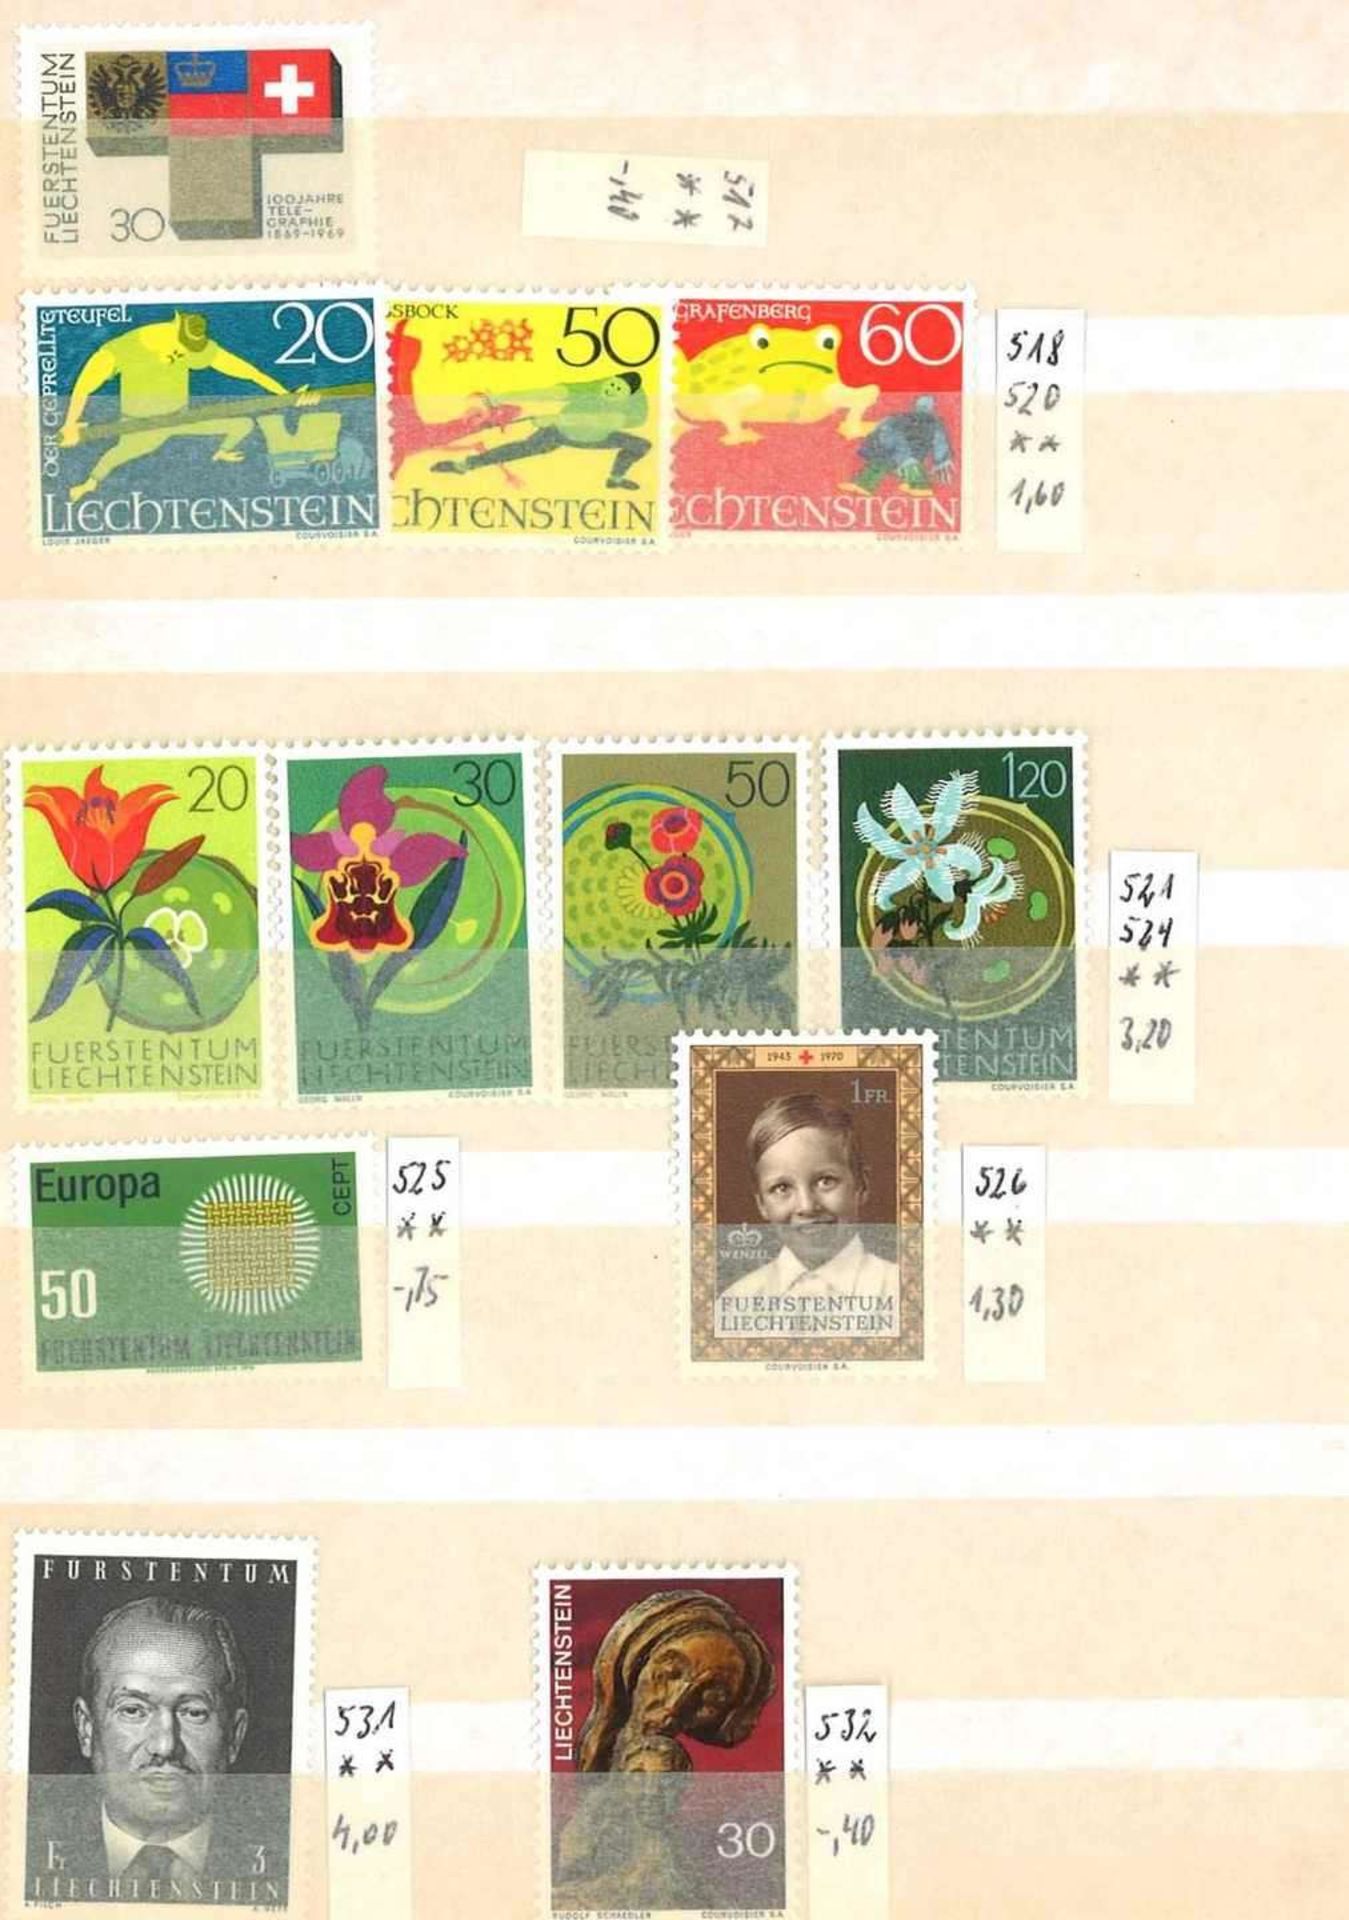 Kleine Sammlung Liechtenstein, dabei Jahrgang 1961-1973, diverse Katalognummern. Sauber gesammelt. - Image 2 of 2